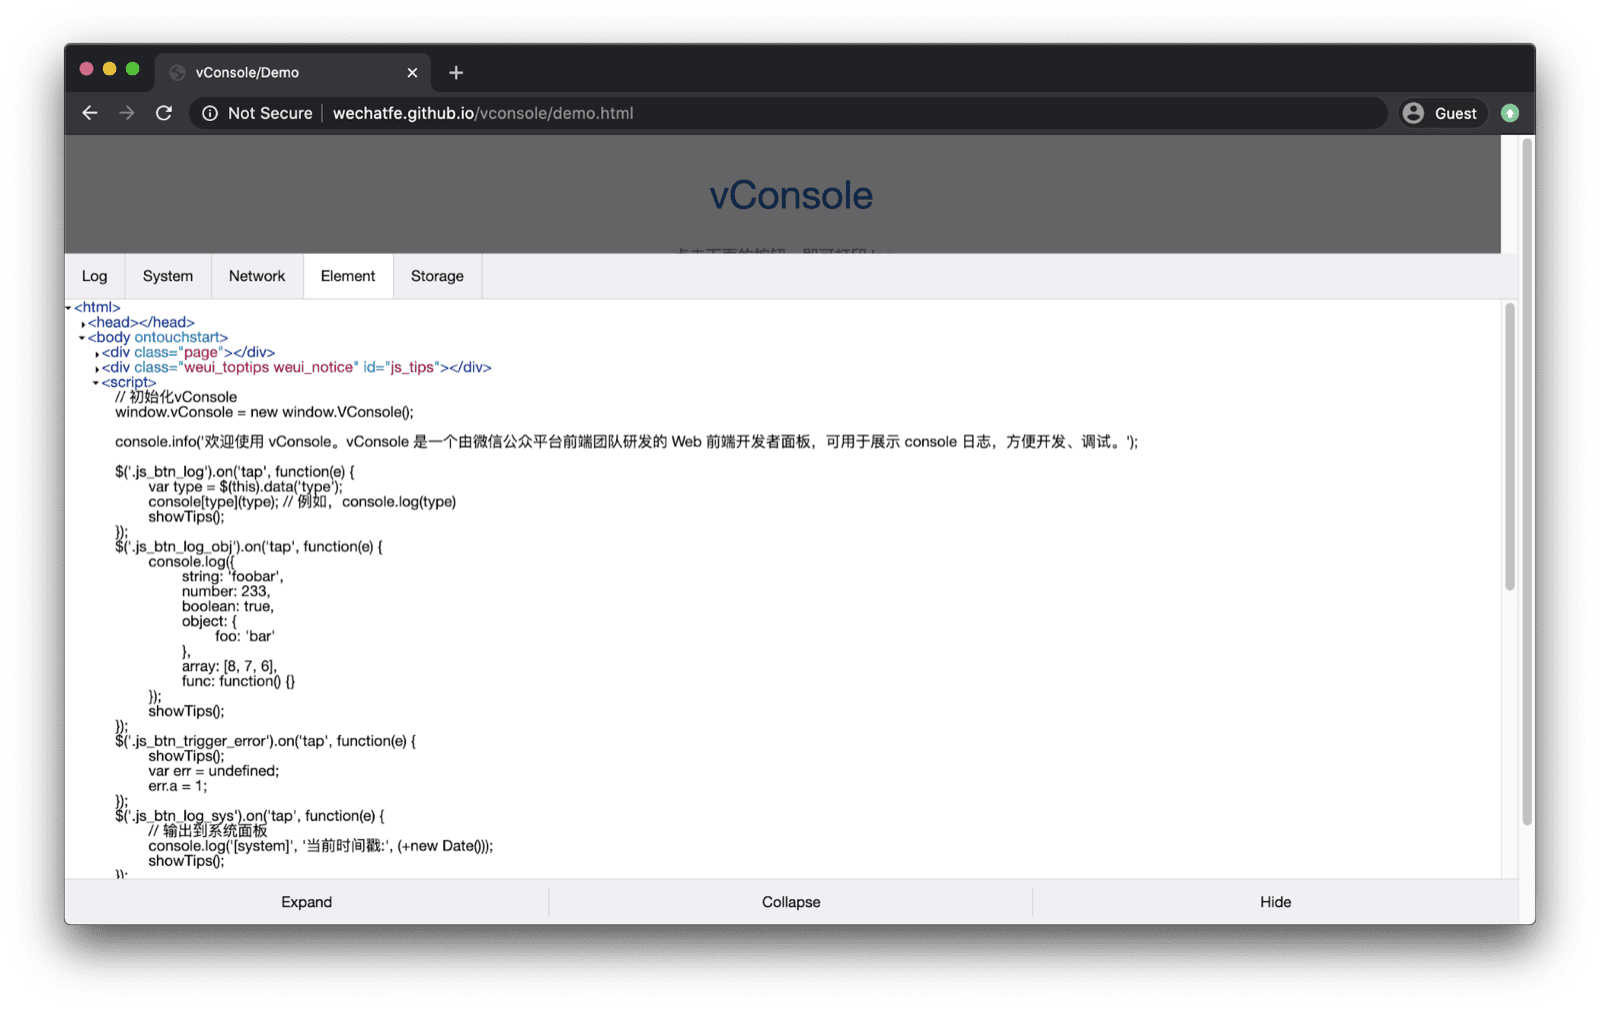 vConsole デモアプリ。vConsole が下部に開き、ログ、システム、ネットワーク、要素、ストレージのタブがあります。